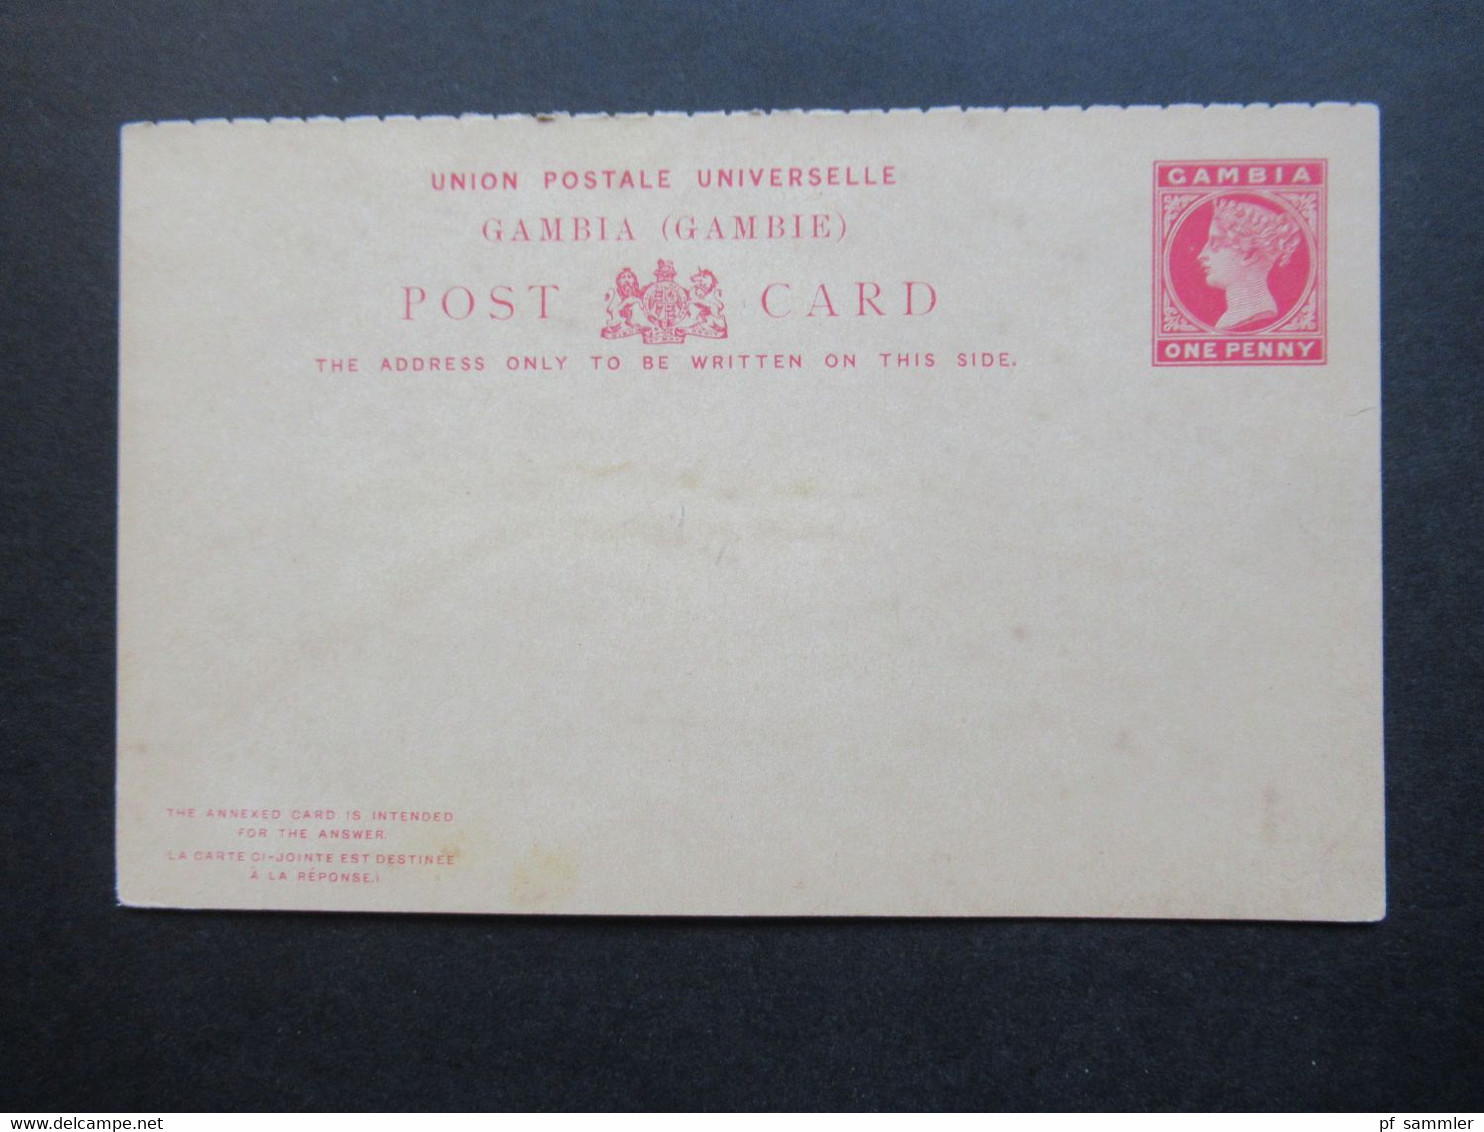 Post Card Gambia um 1888 Ganzsachen / Stationary 3 Stück davon 1x Doppelkarte alle ungebraucht